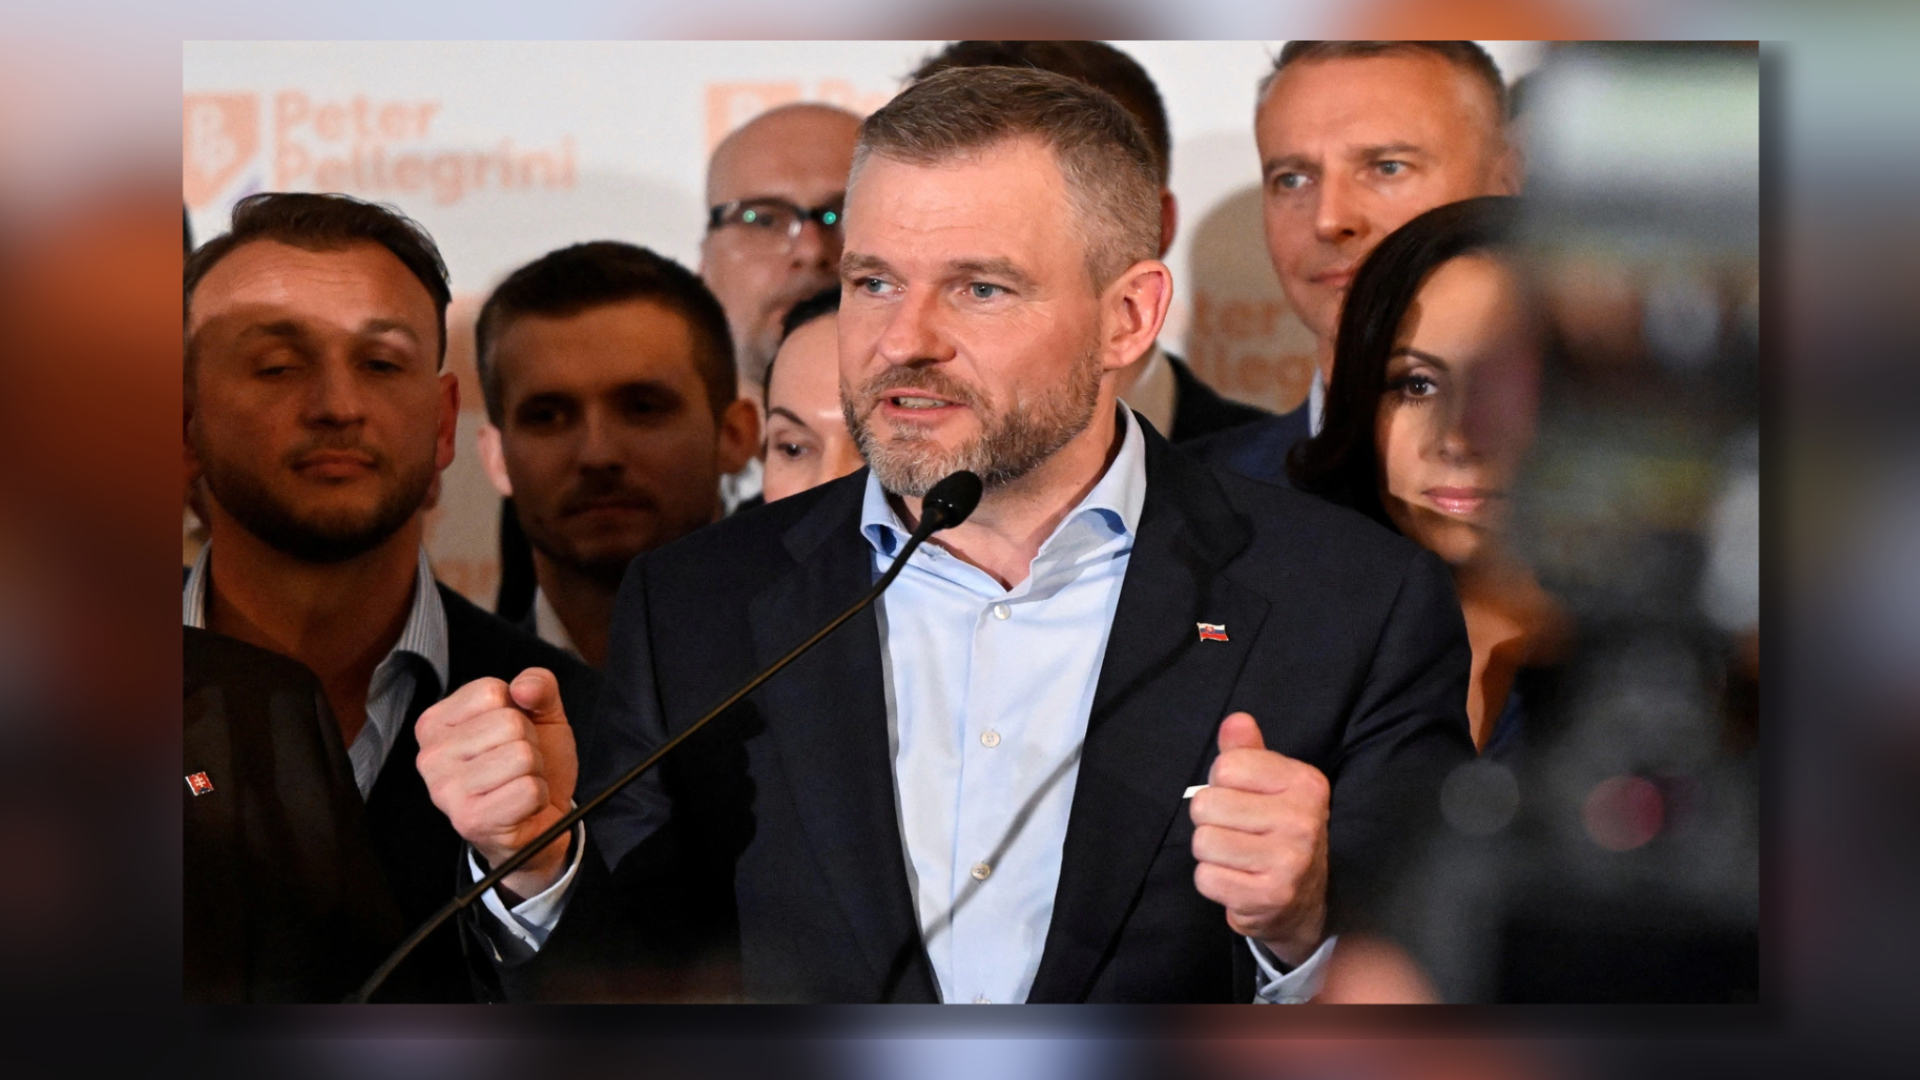 Photo of Za prezidenta Slovenska bol zvolený Peter Pellegrini, ktorý je vnímaný ako populista priateľský k Rusku.